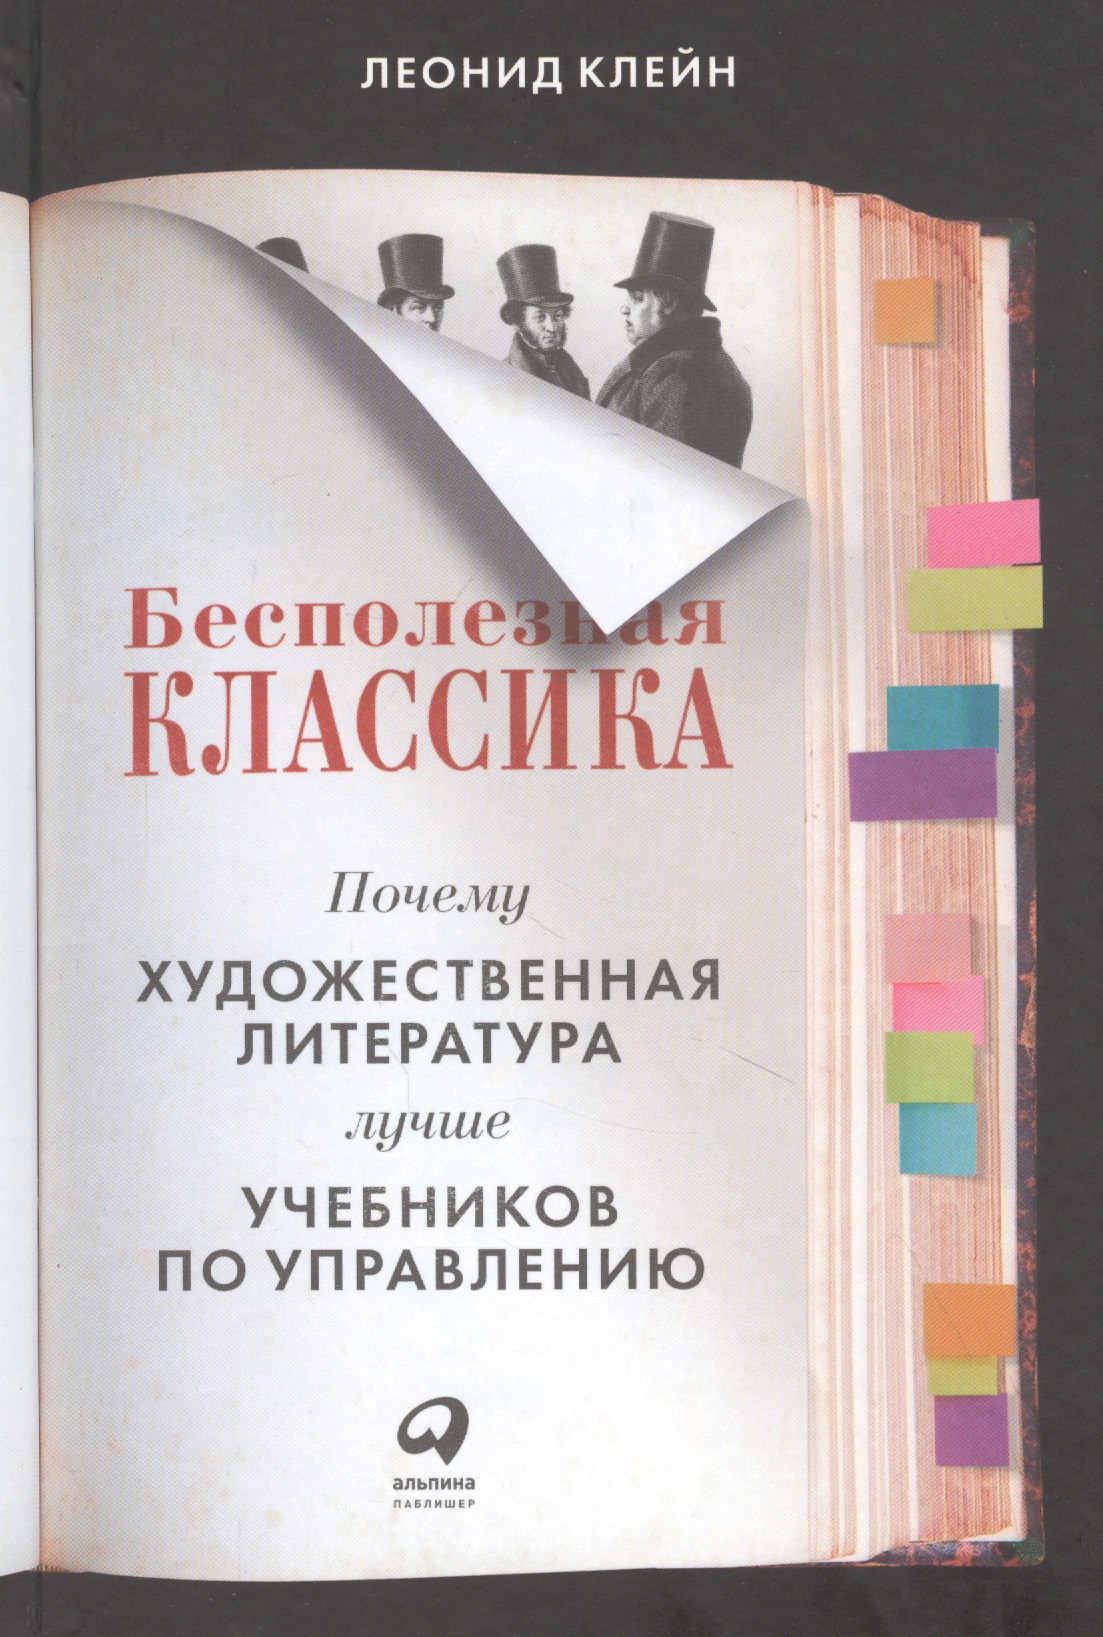 Клейн Леонид Бесполезная классика: Почему художественная литература лучше учебников по управлению